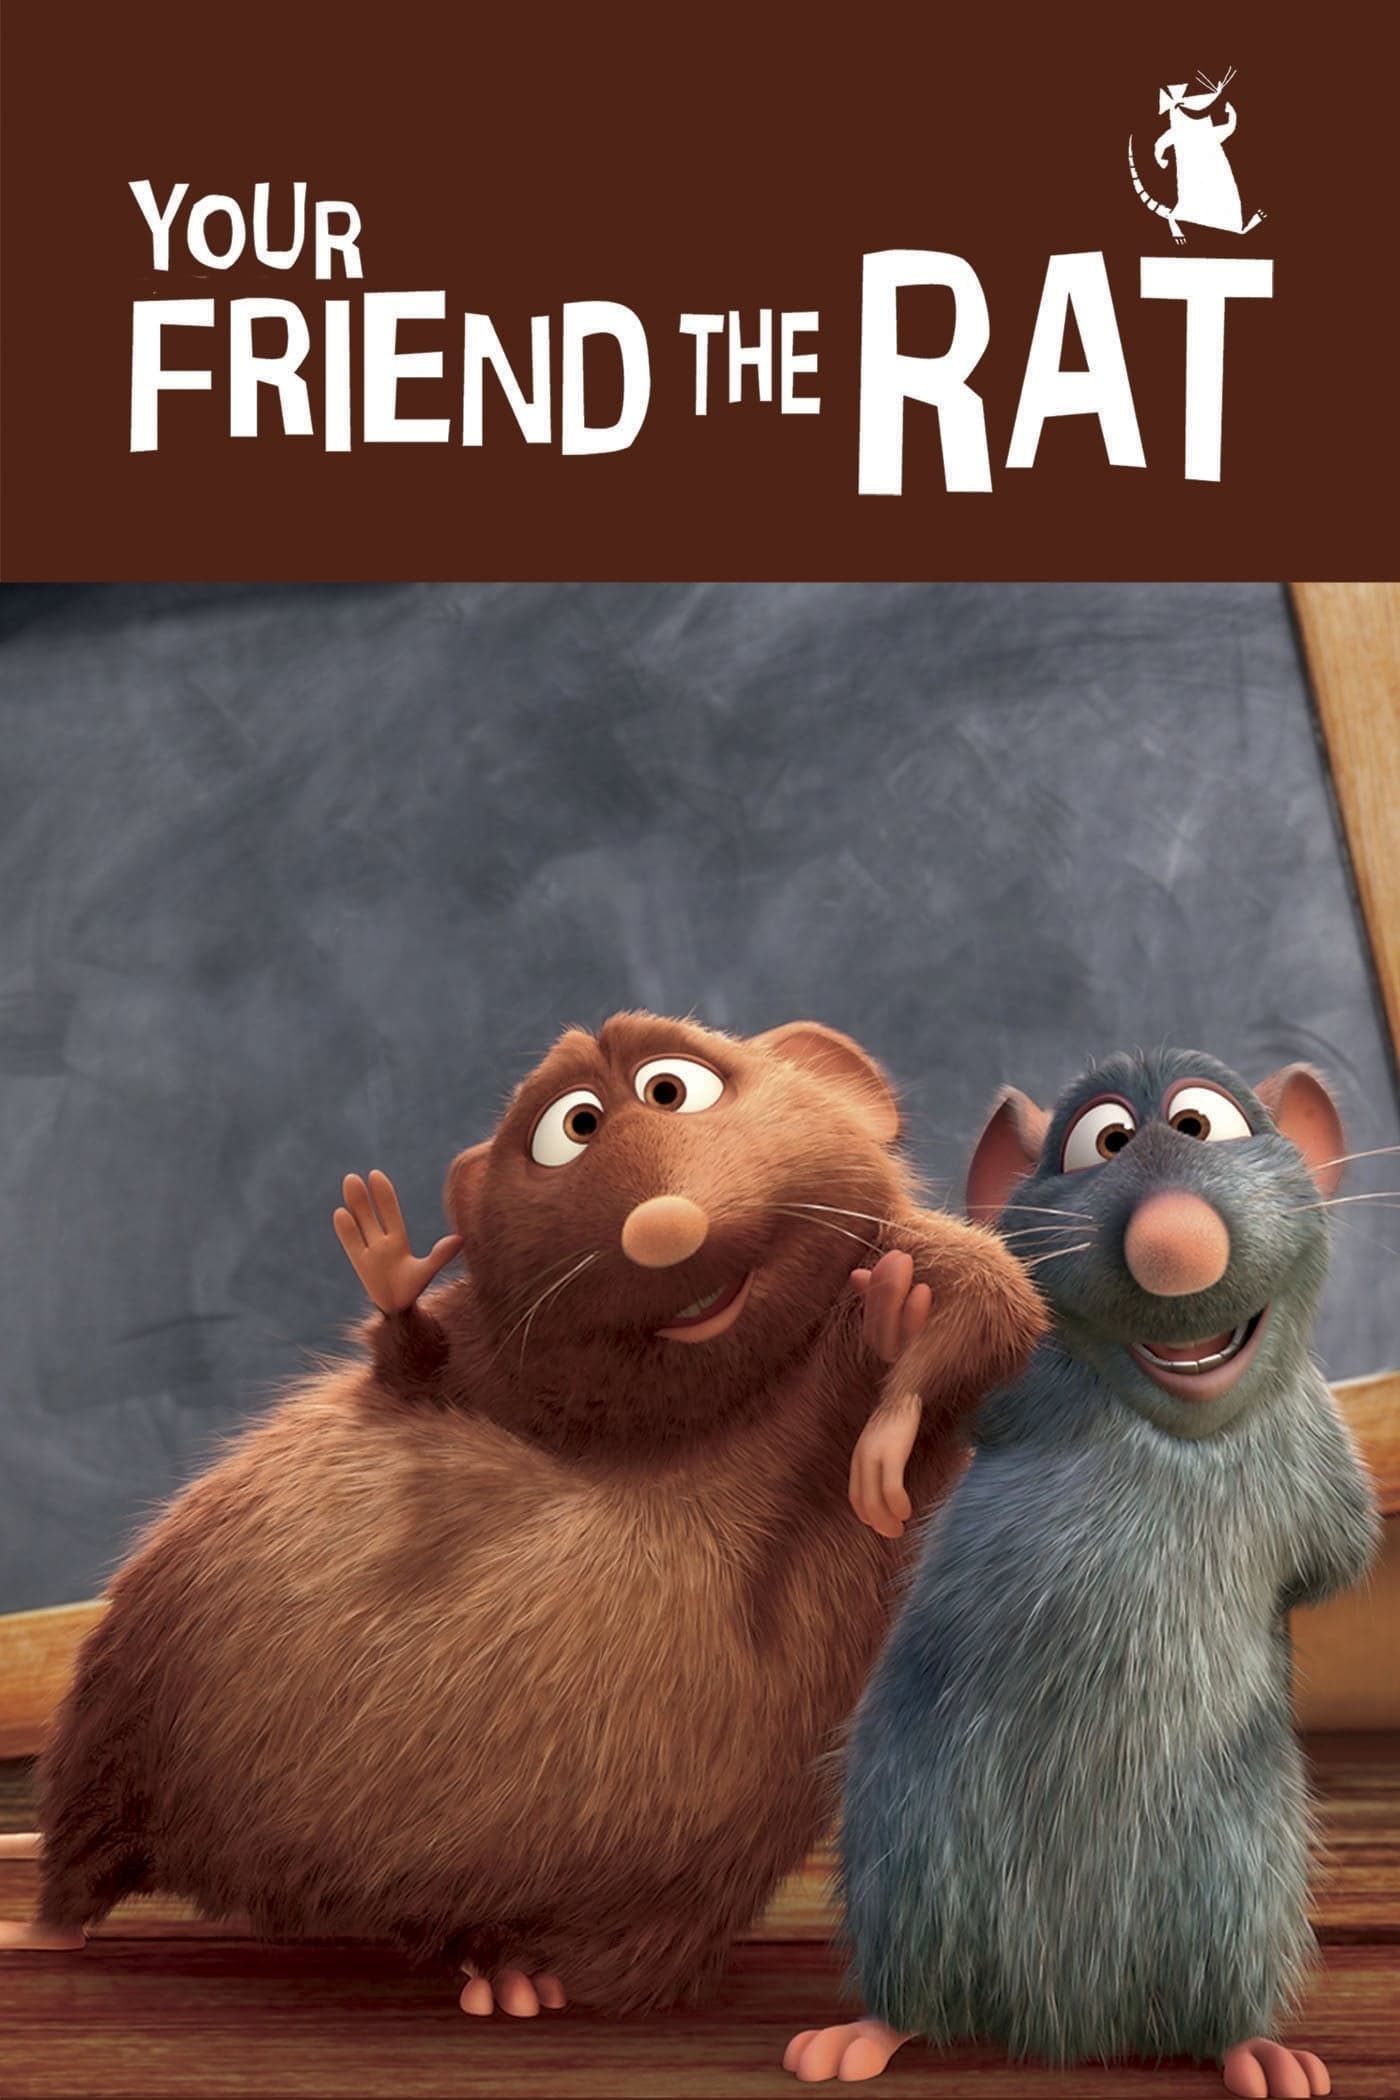 Notre ami le rat